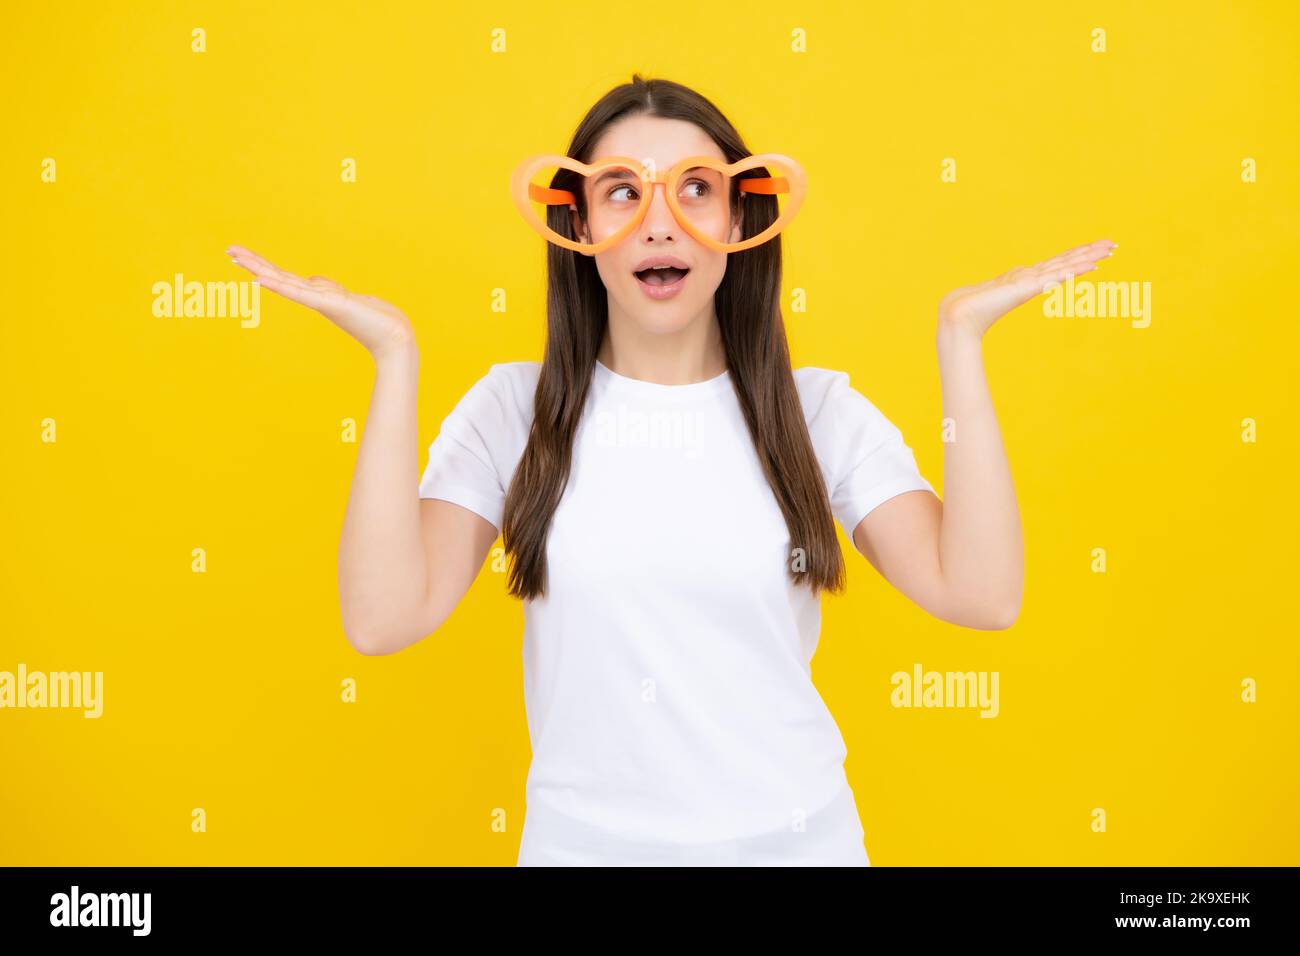 Schönheit lustige Teenager-Mädchen mit Party-Brille, gelber Hintergrund. Überraschte junge Frau mit herzförmigen Gläsern. Stockfoto